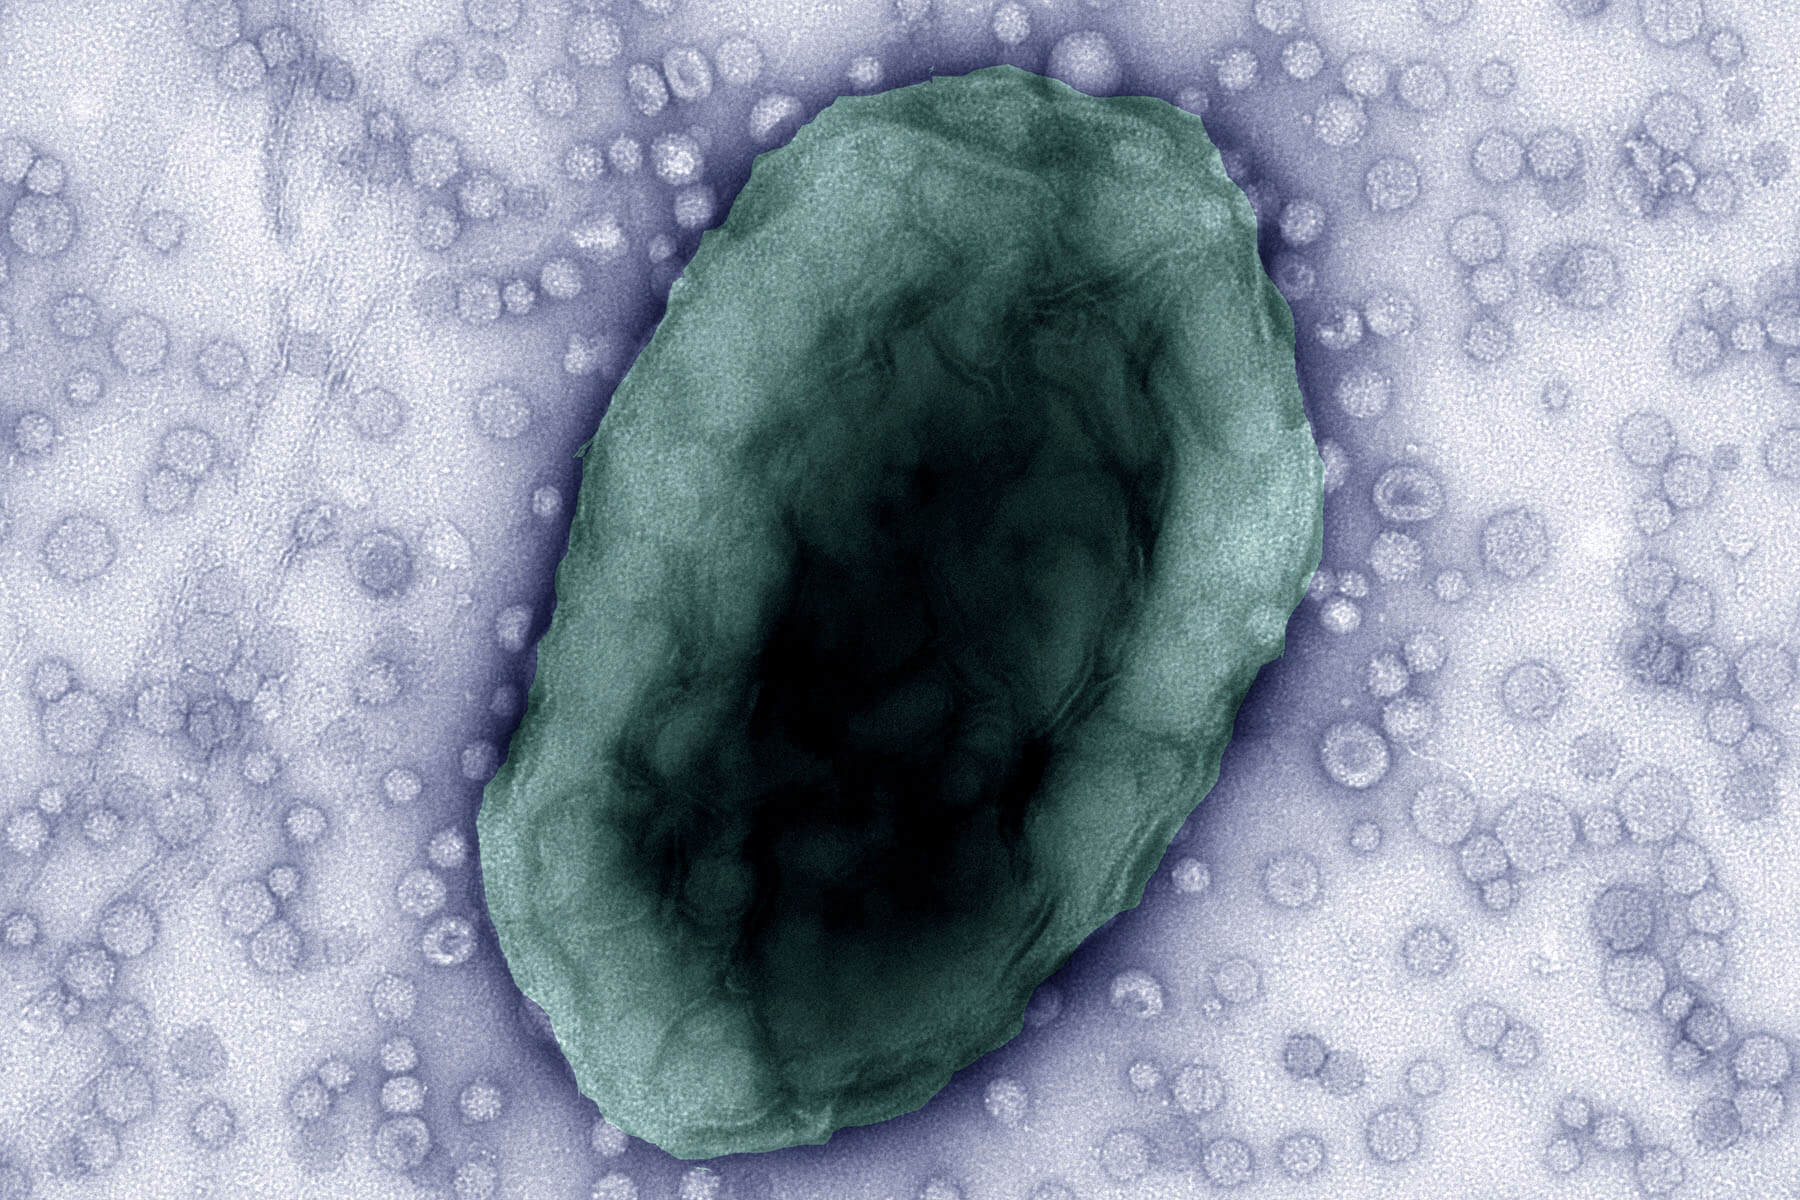 Bacteroides thetaiotaomicron cell